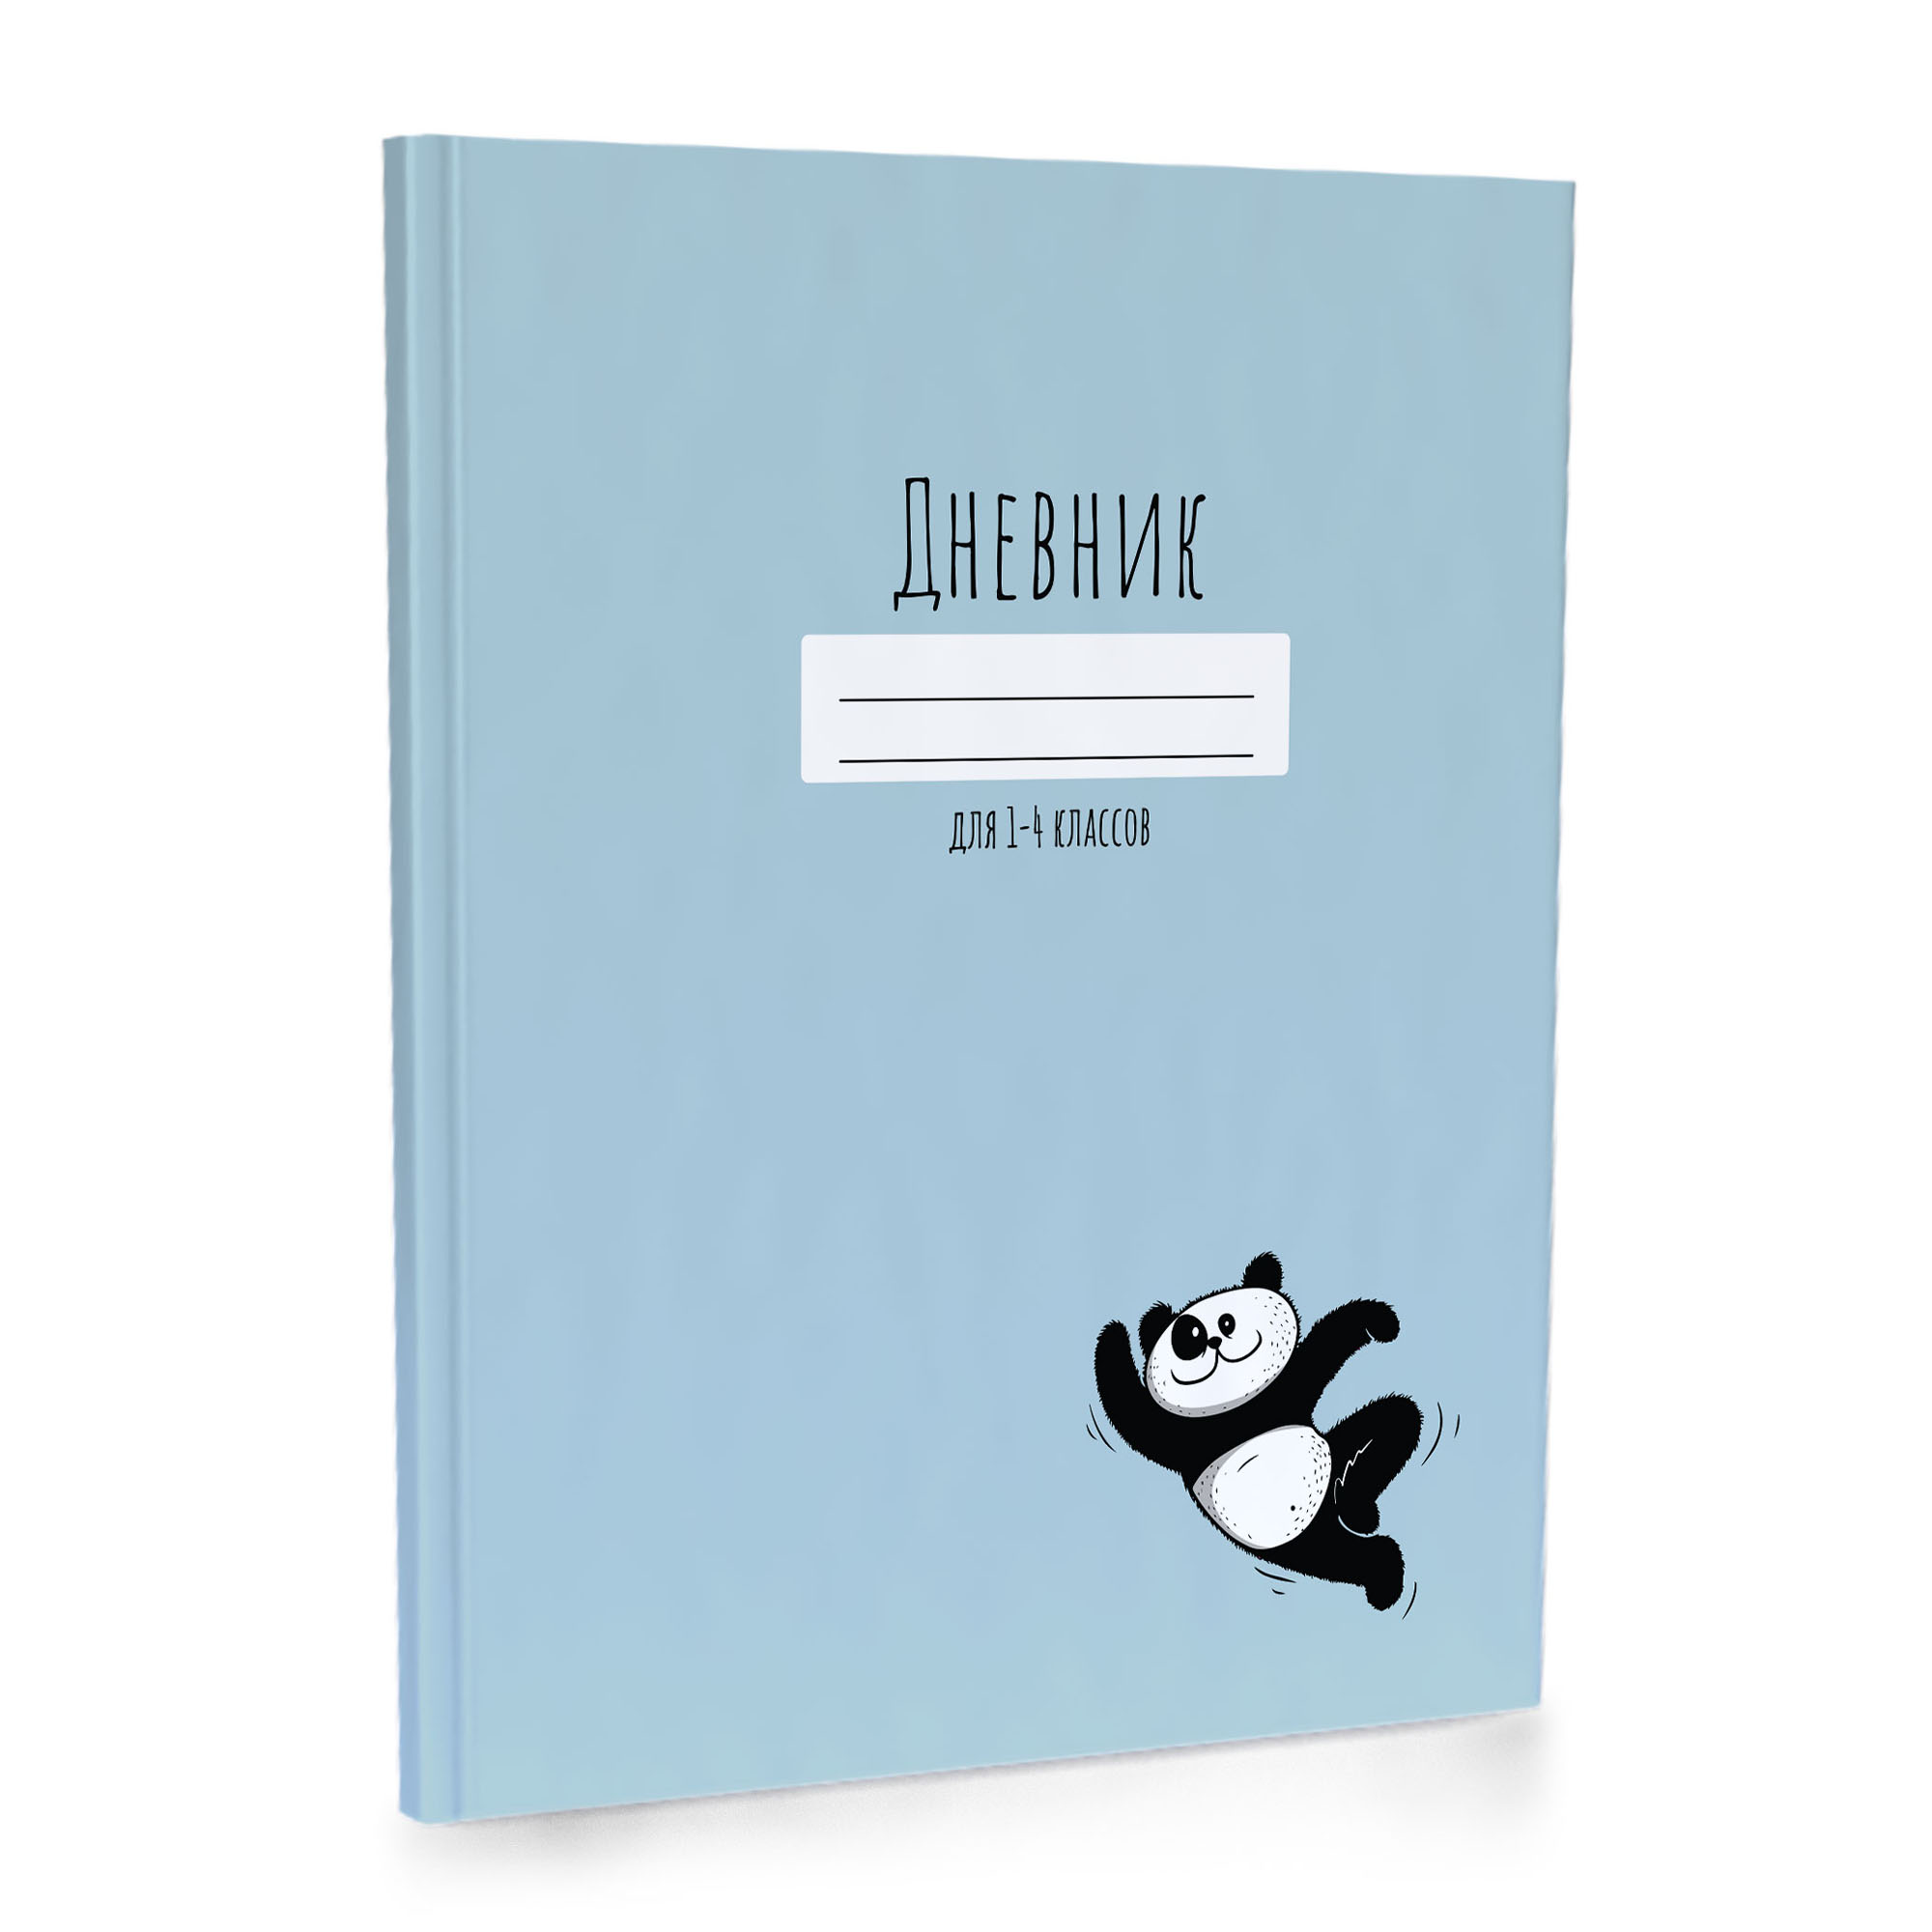 Дневник для младших классов 13685 7БЦ Веселая панда - Ижевск 